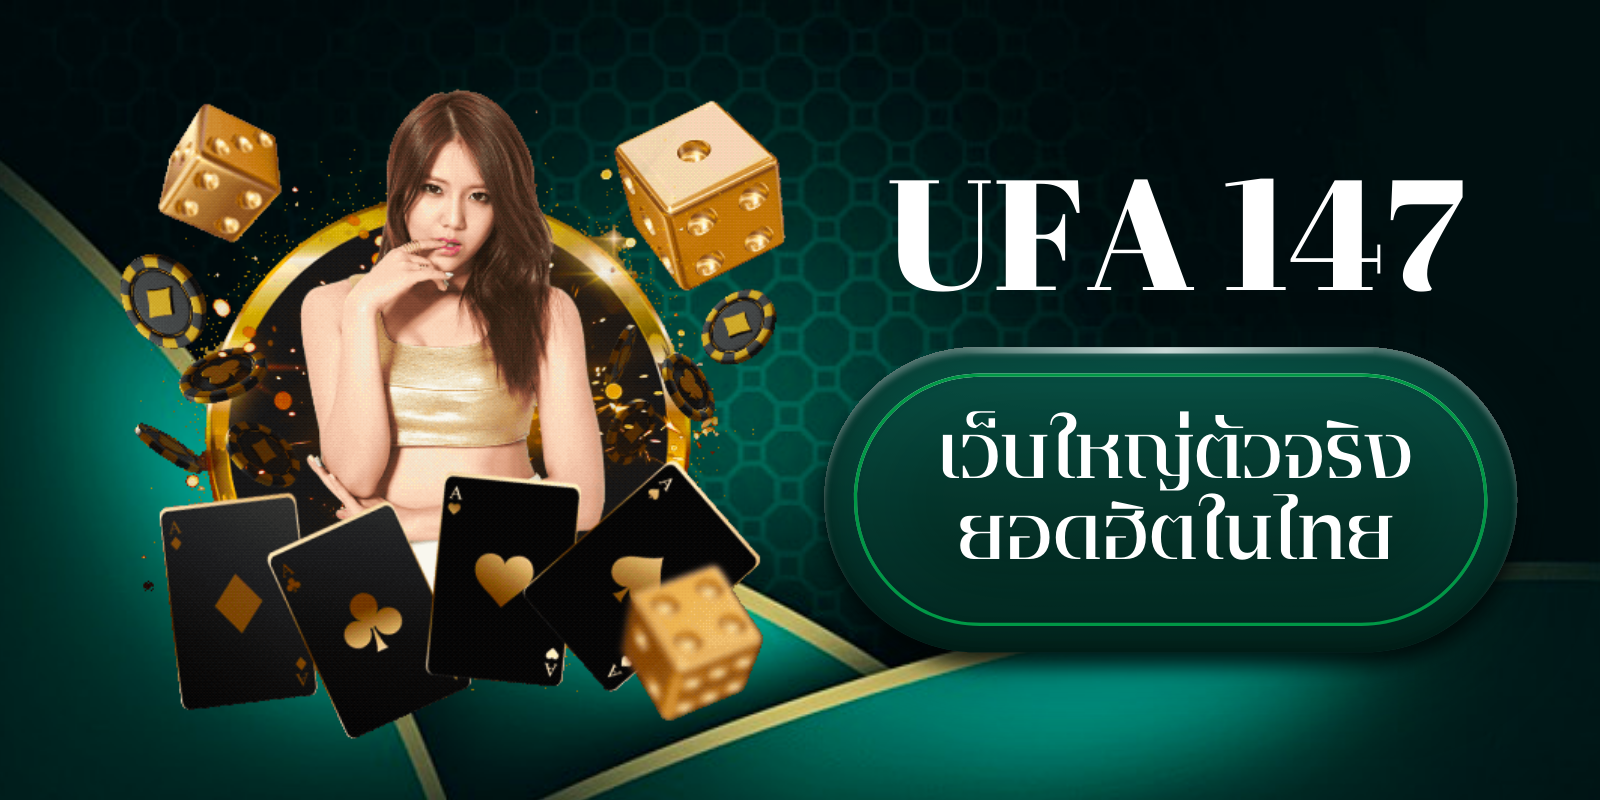 ufa 147 เว็บใหญ่ตัวจริง ยอดฮิตในไทย